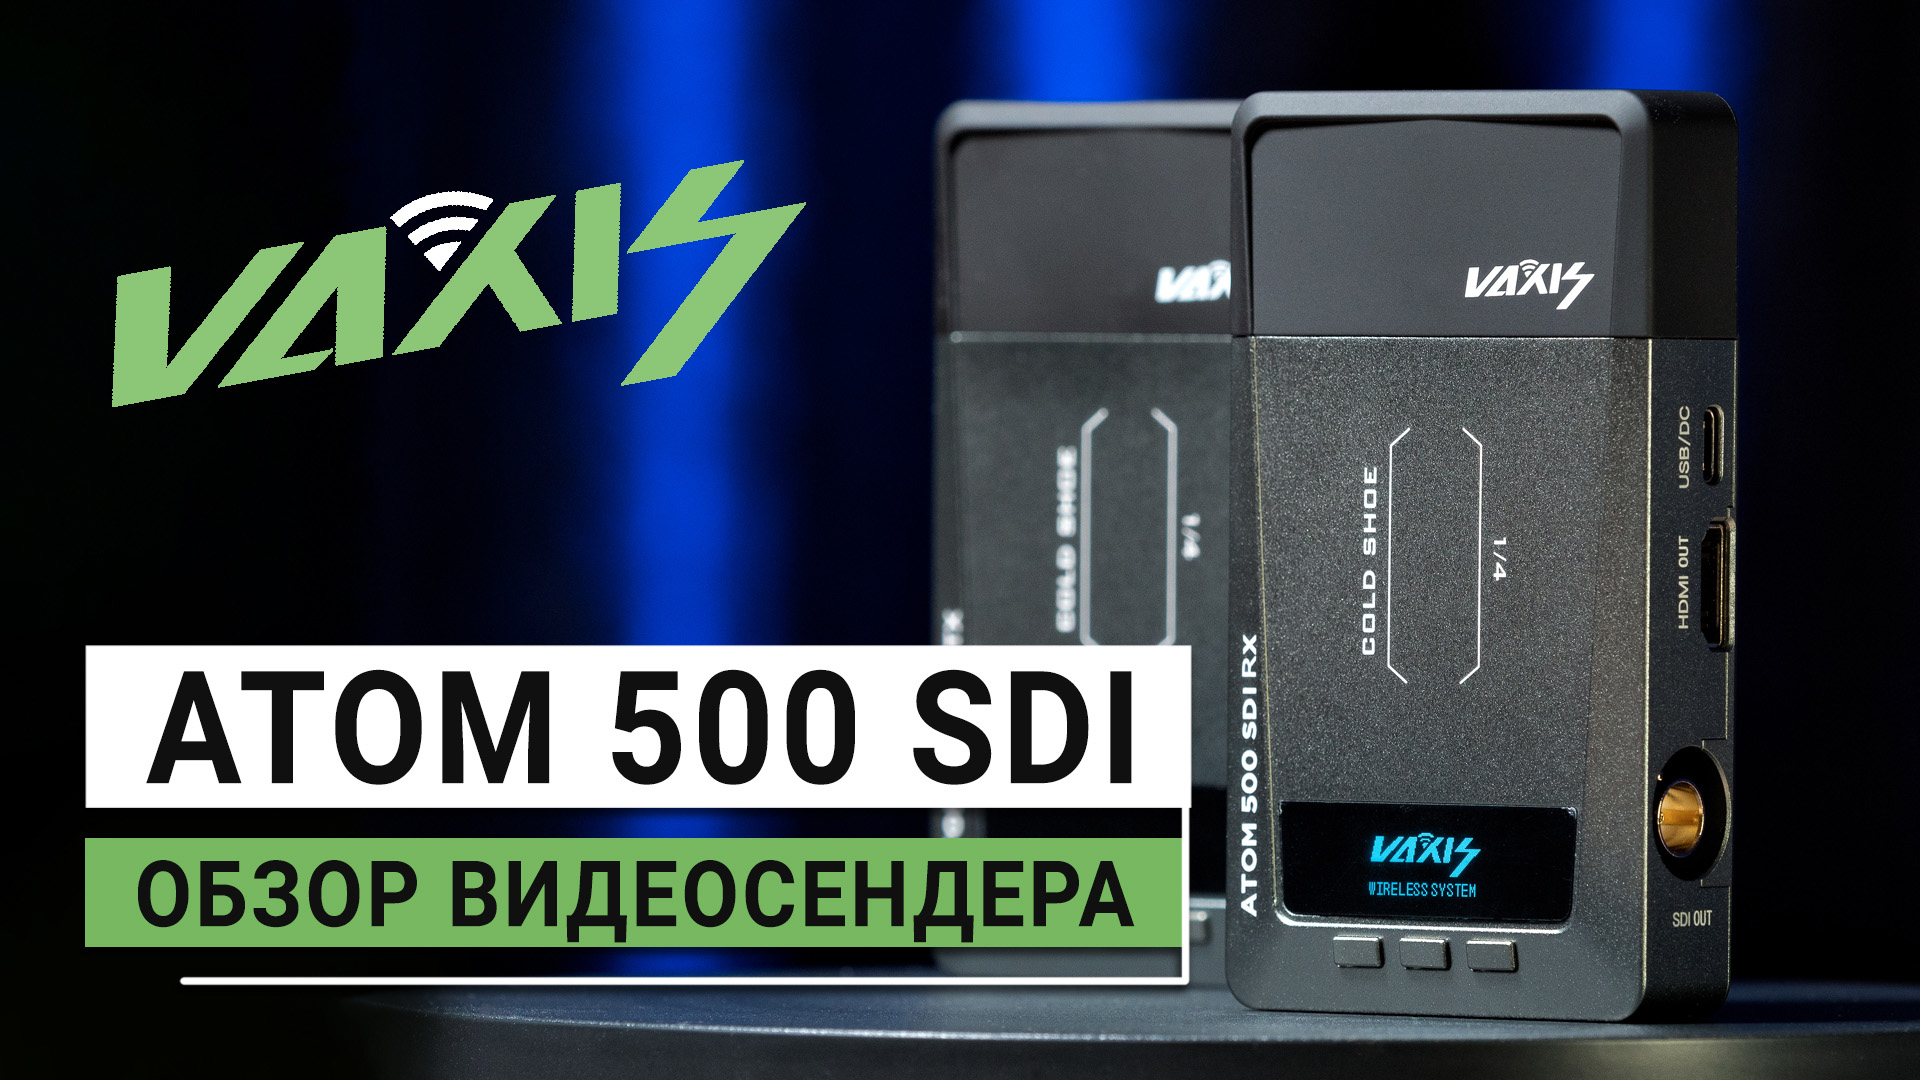 Обзор видеосендера Vaxis ATOM 500 SDI | Беспроводная передача видеосигнала по доступной цене